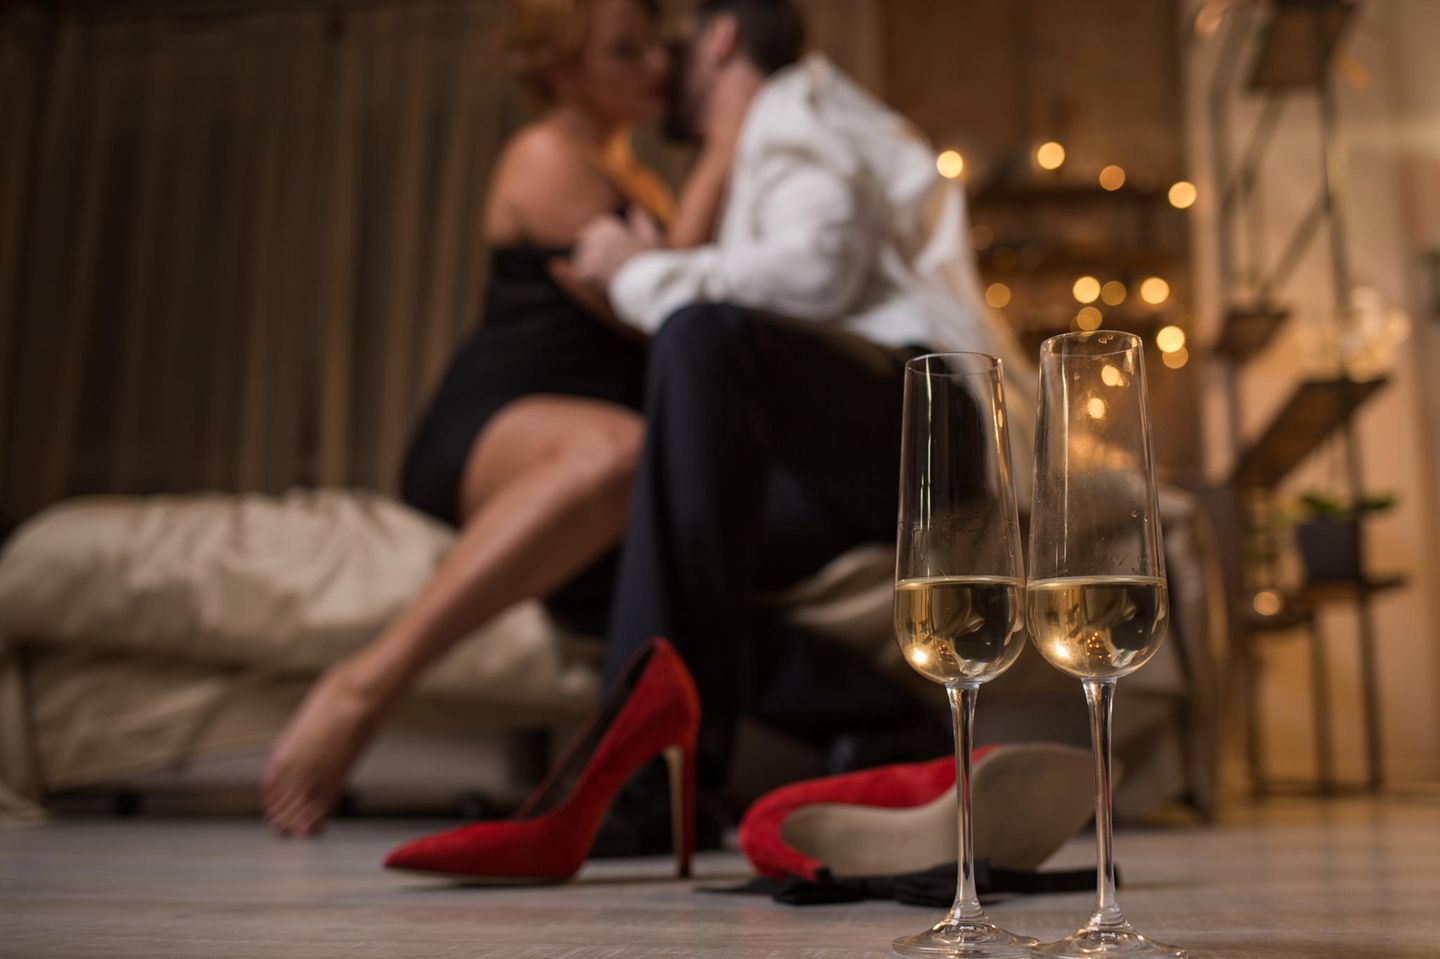 Paar auf Bett, Schuhe und Champagner im Vordergrund